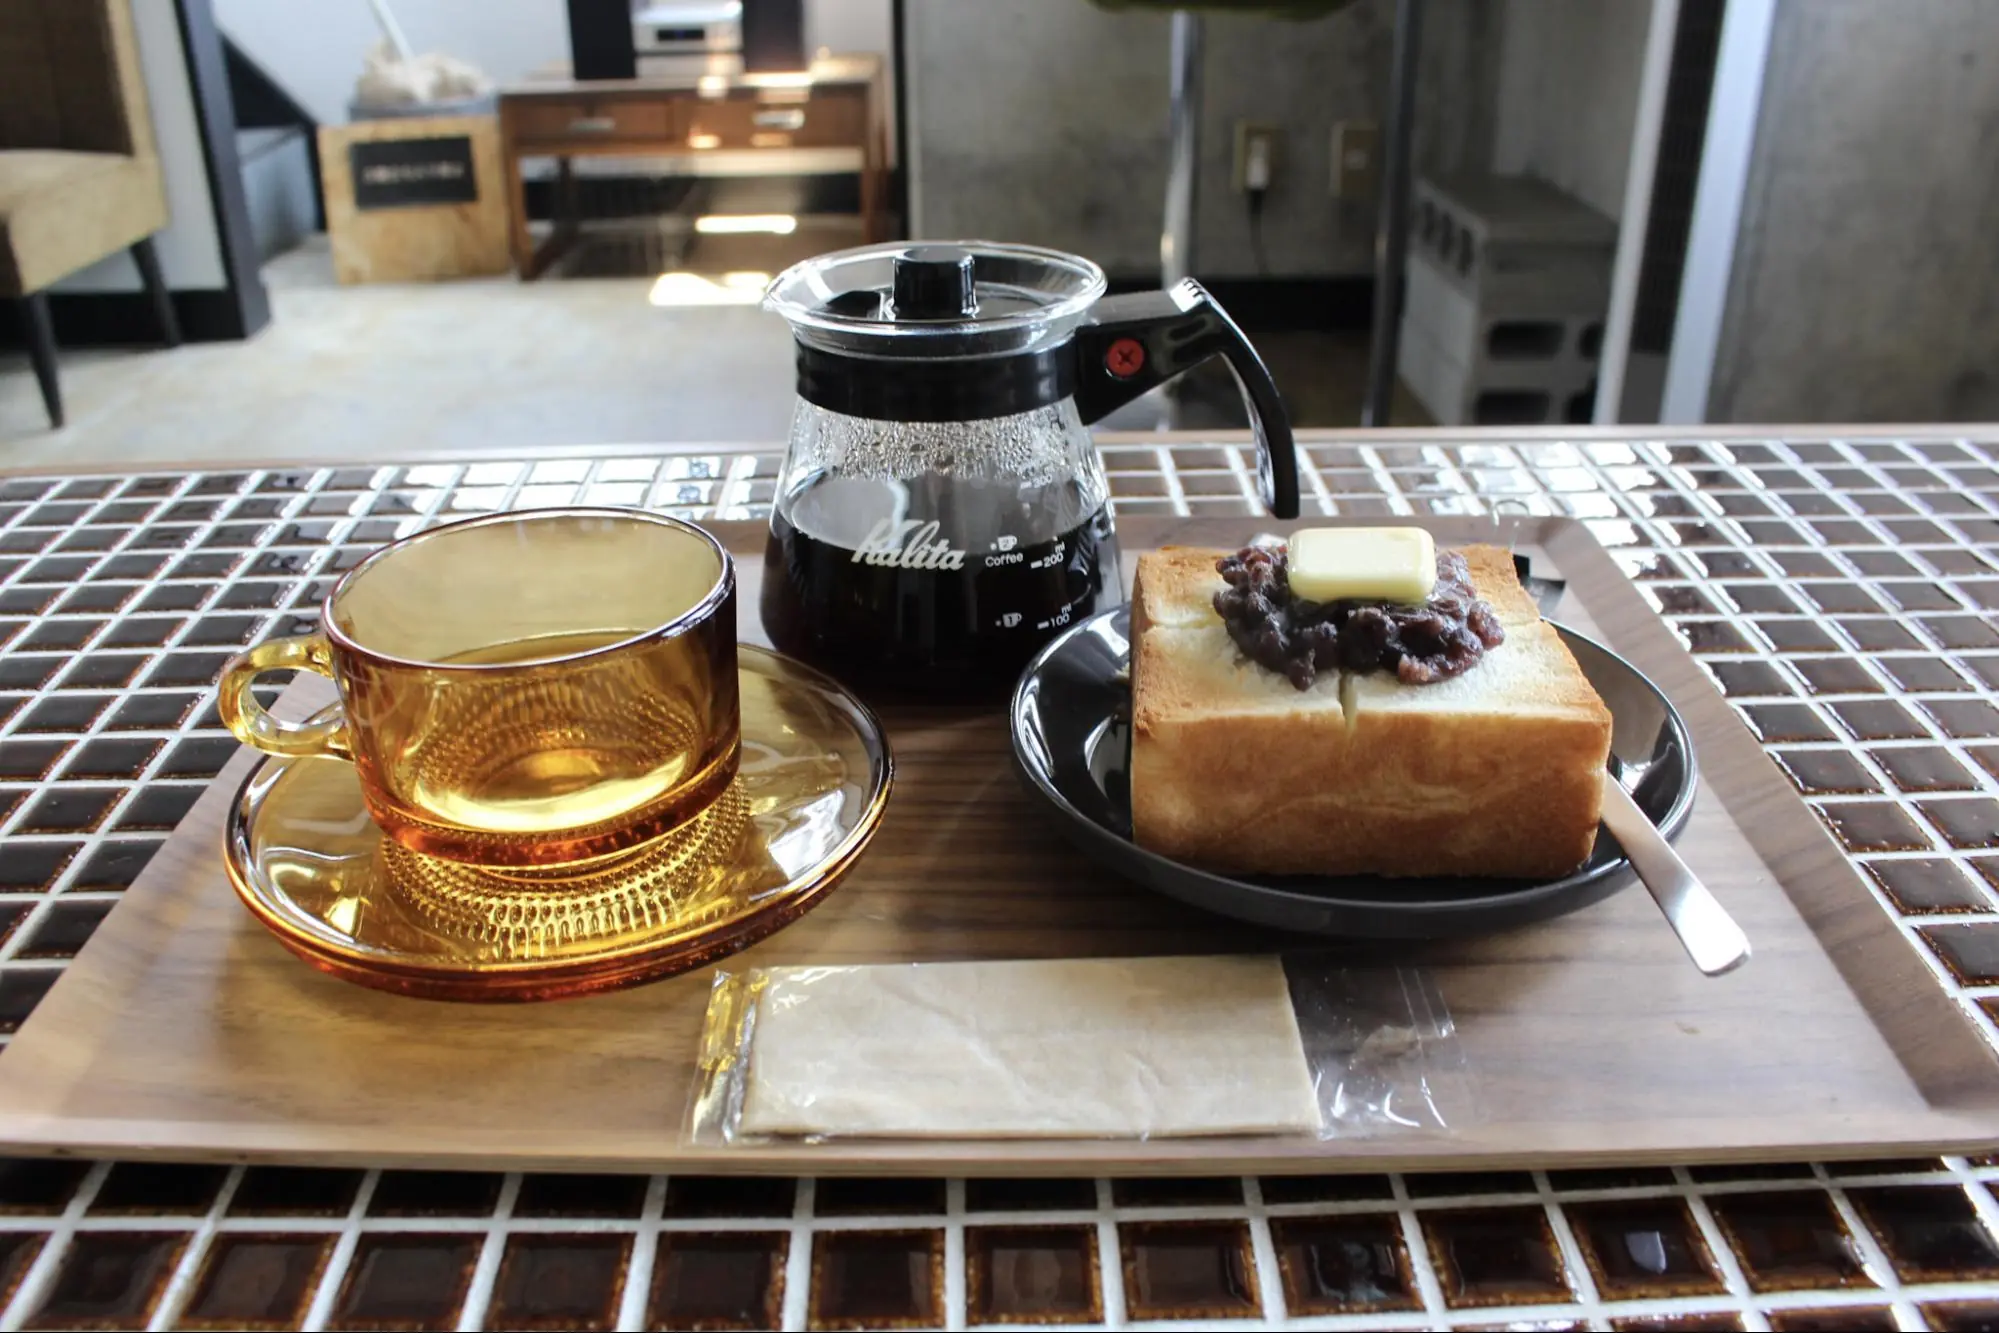 【Inazawa City】Khám phá hương vị cà phê yêu thích trong không gian đậm phong cách cổ điển dành cho người trưởng thành! &quot;Bishu Akatsuki Coffee Roasting Studio&quot; - nơi bạn có thể thưởng thức cà phê đặc biệt và chia sẻ trải nghiệm rang cà phê - đã chính thức khai trương.